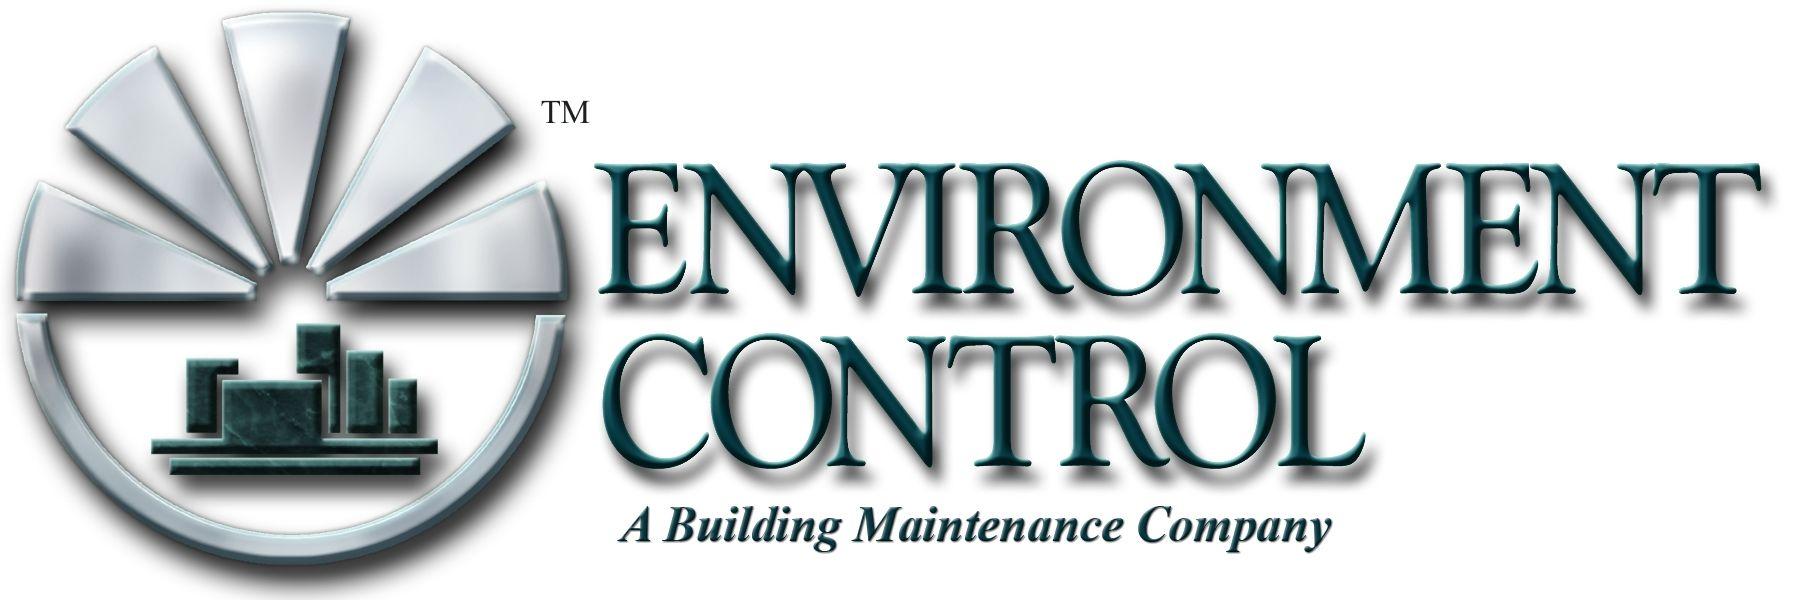 Environmental Control Logo - Environmental Control